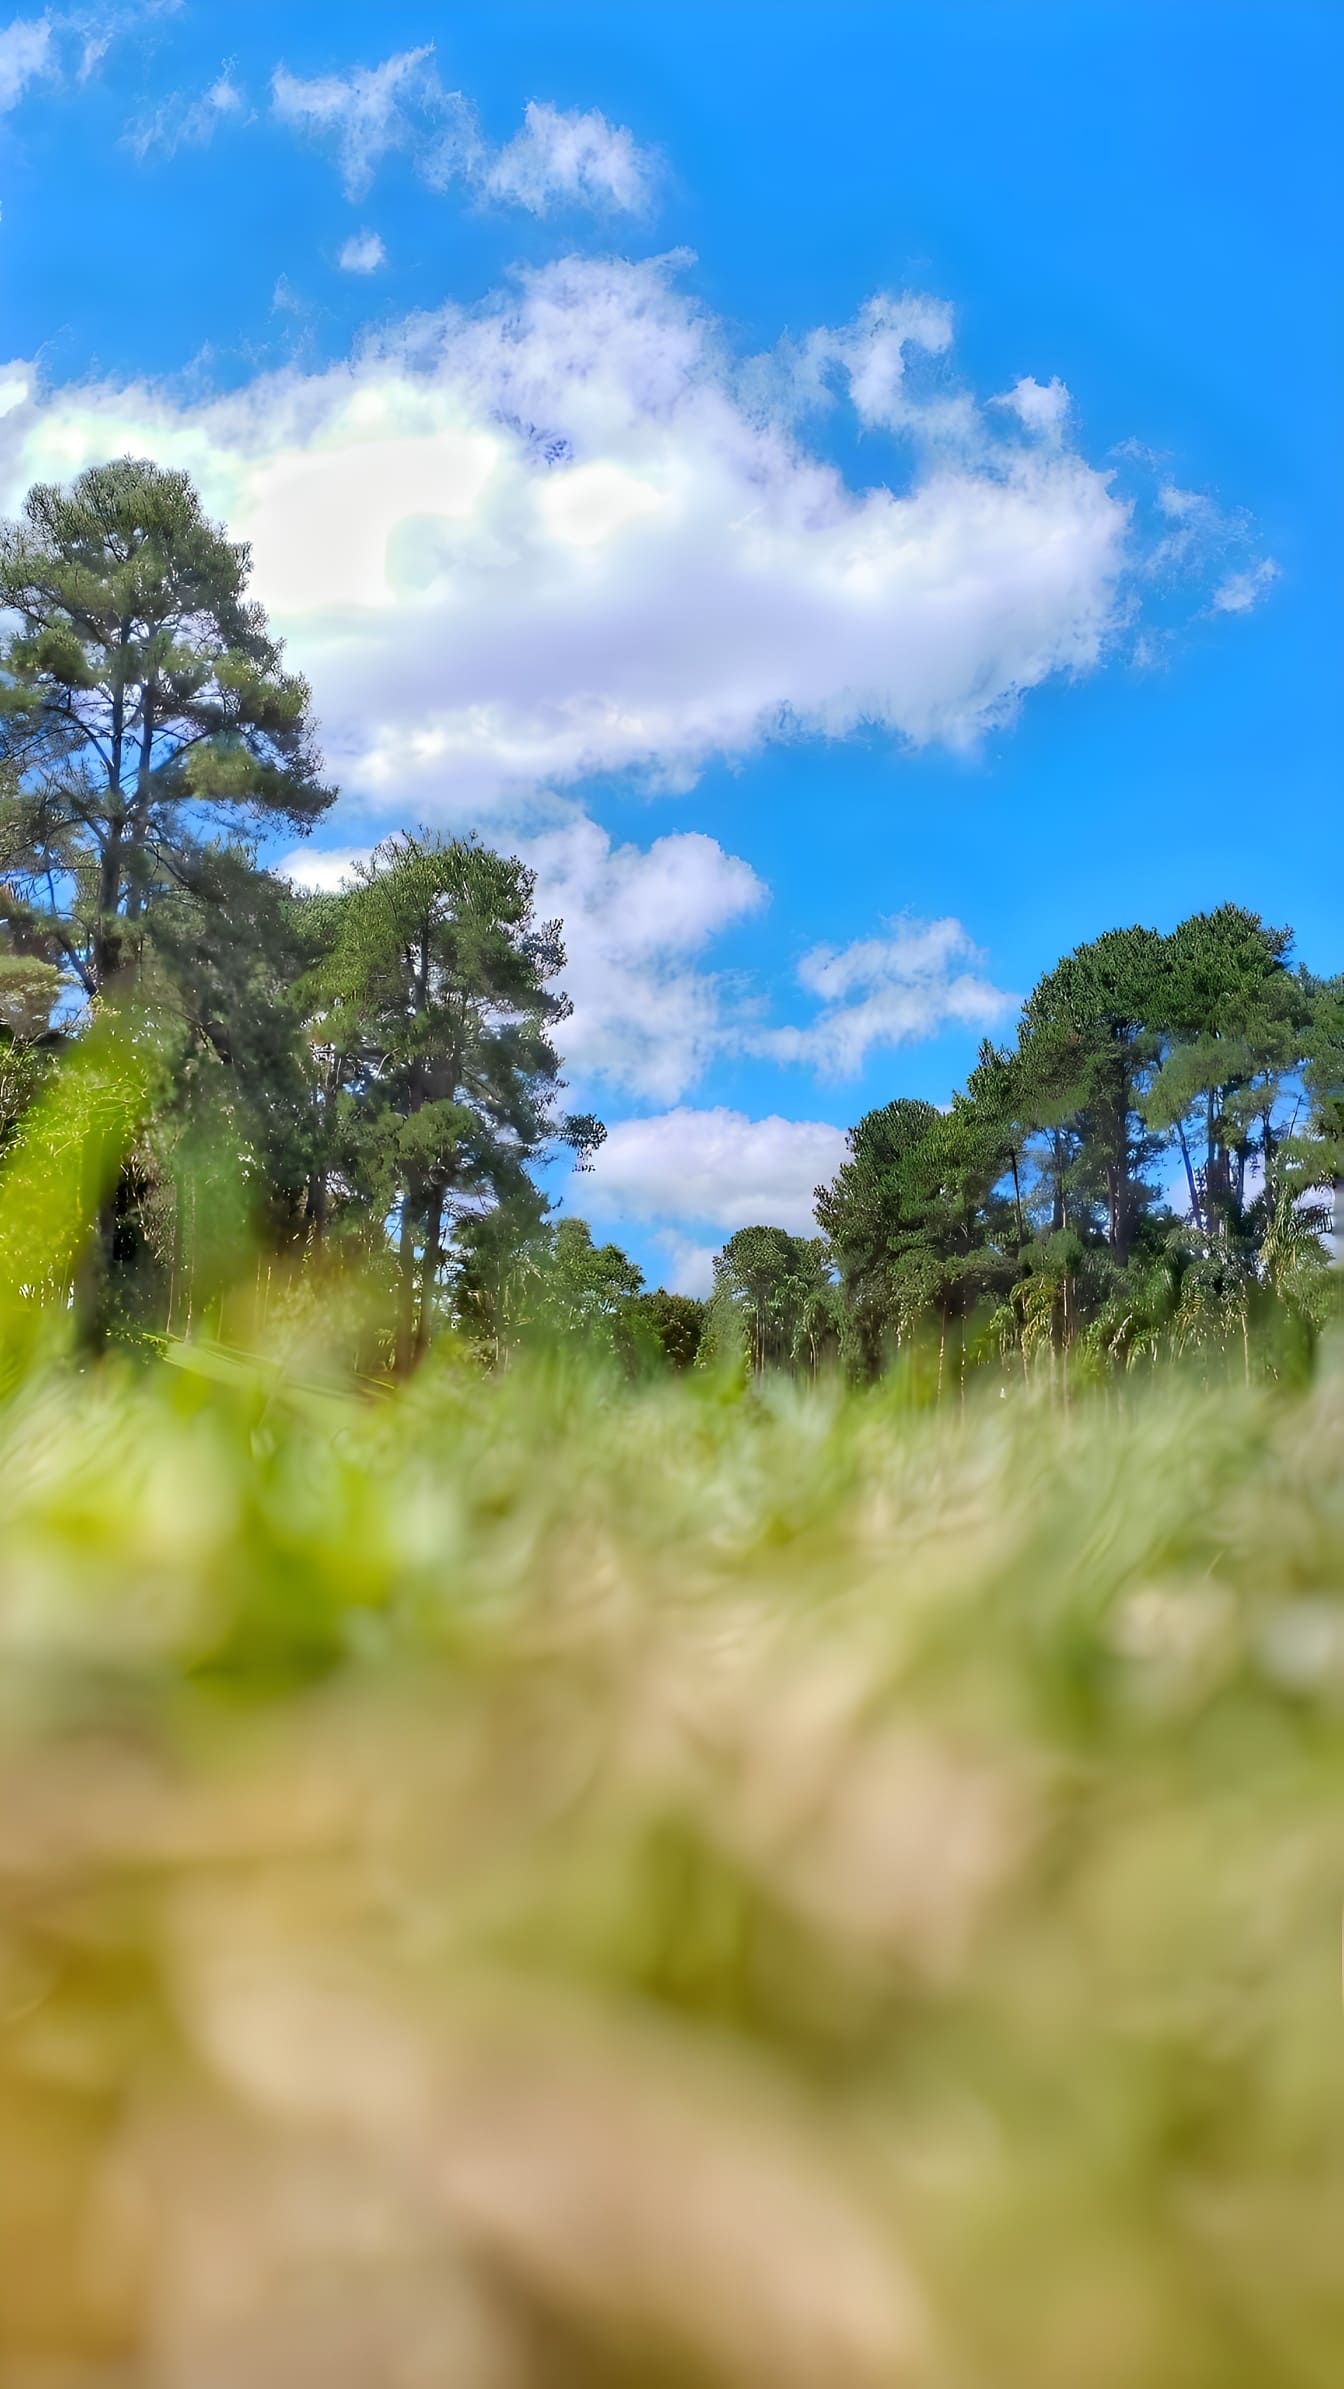 Yukarıda mavi gökyüzü ile çim ve ağaç tarlasının düşük açılı fotoğrafı